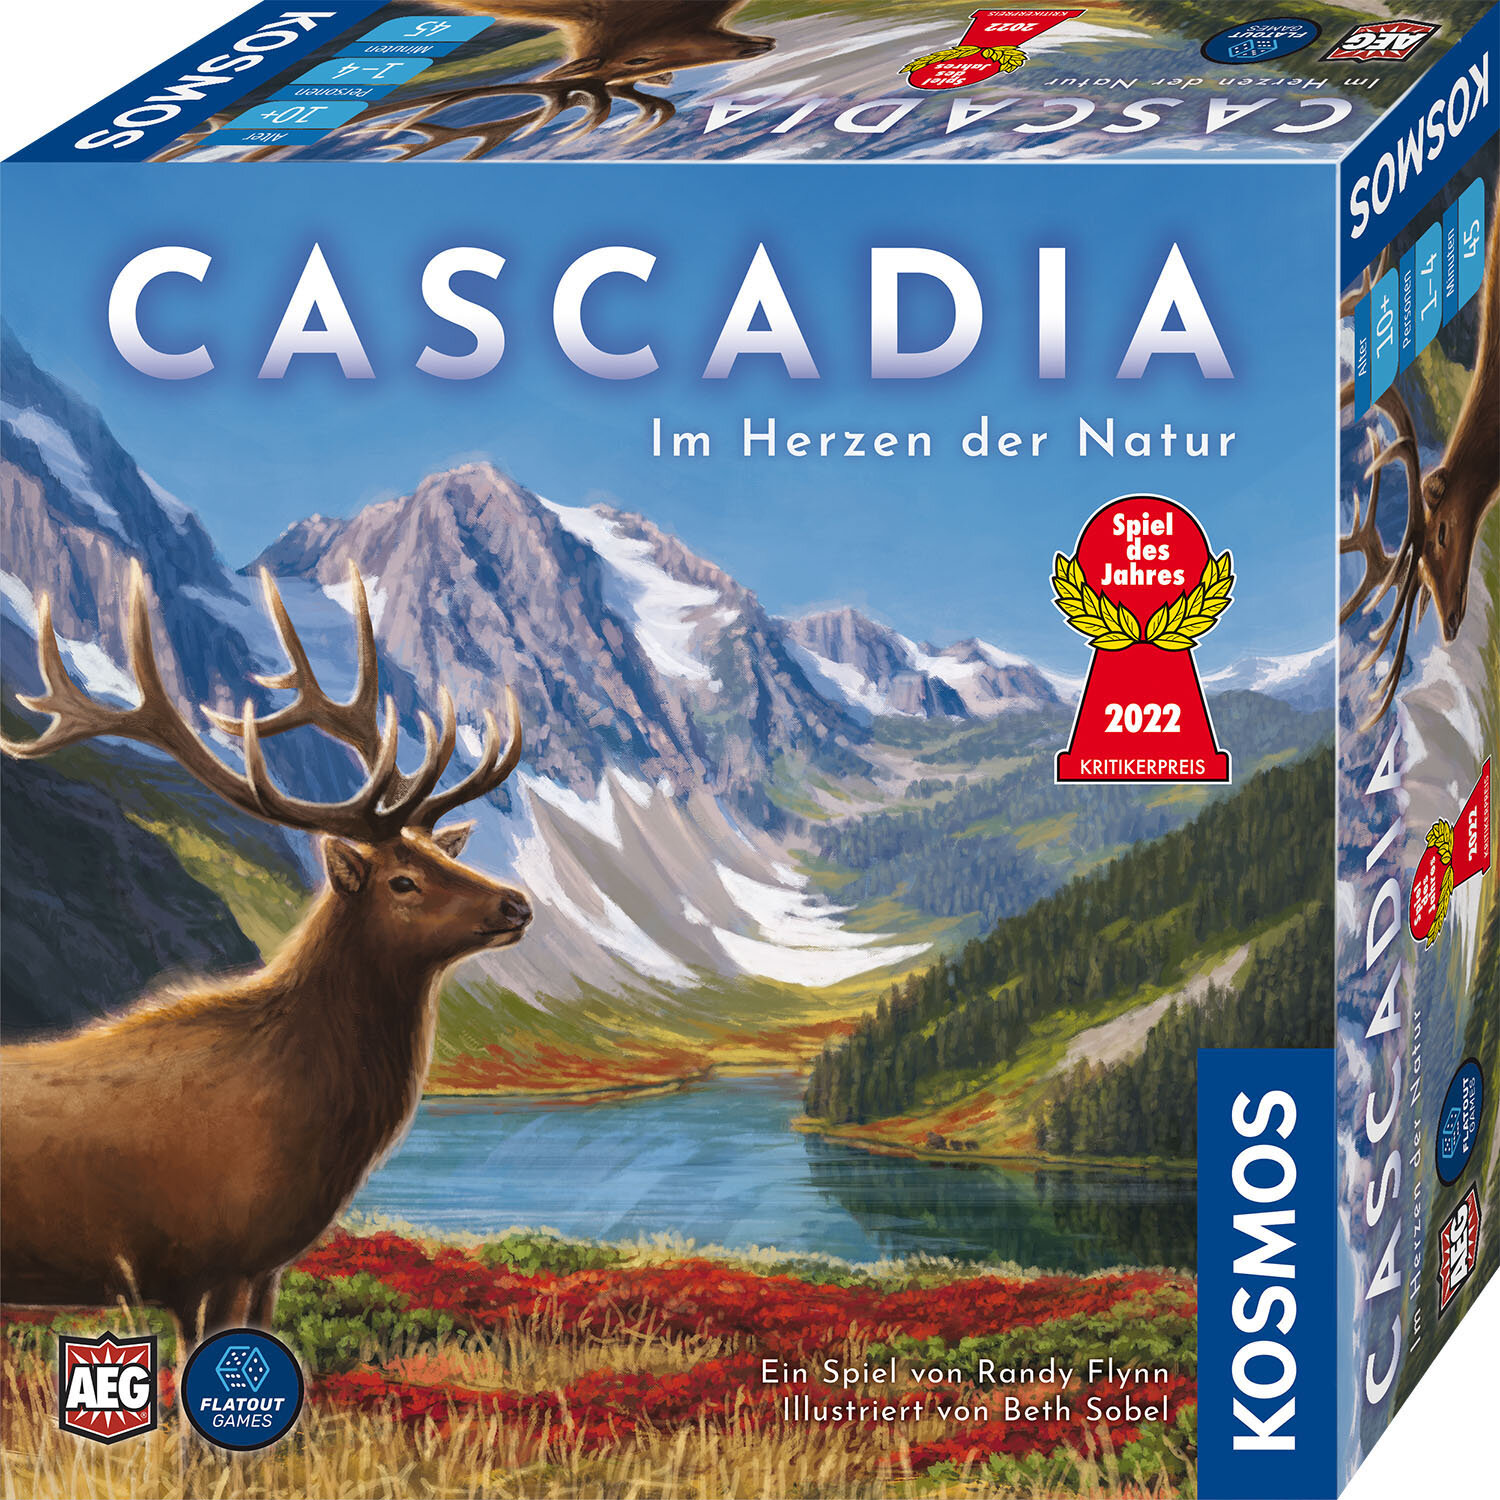 Cascadia – Im Herzen der Natur